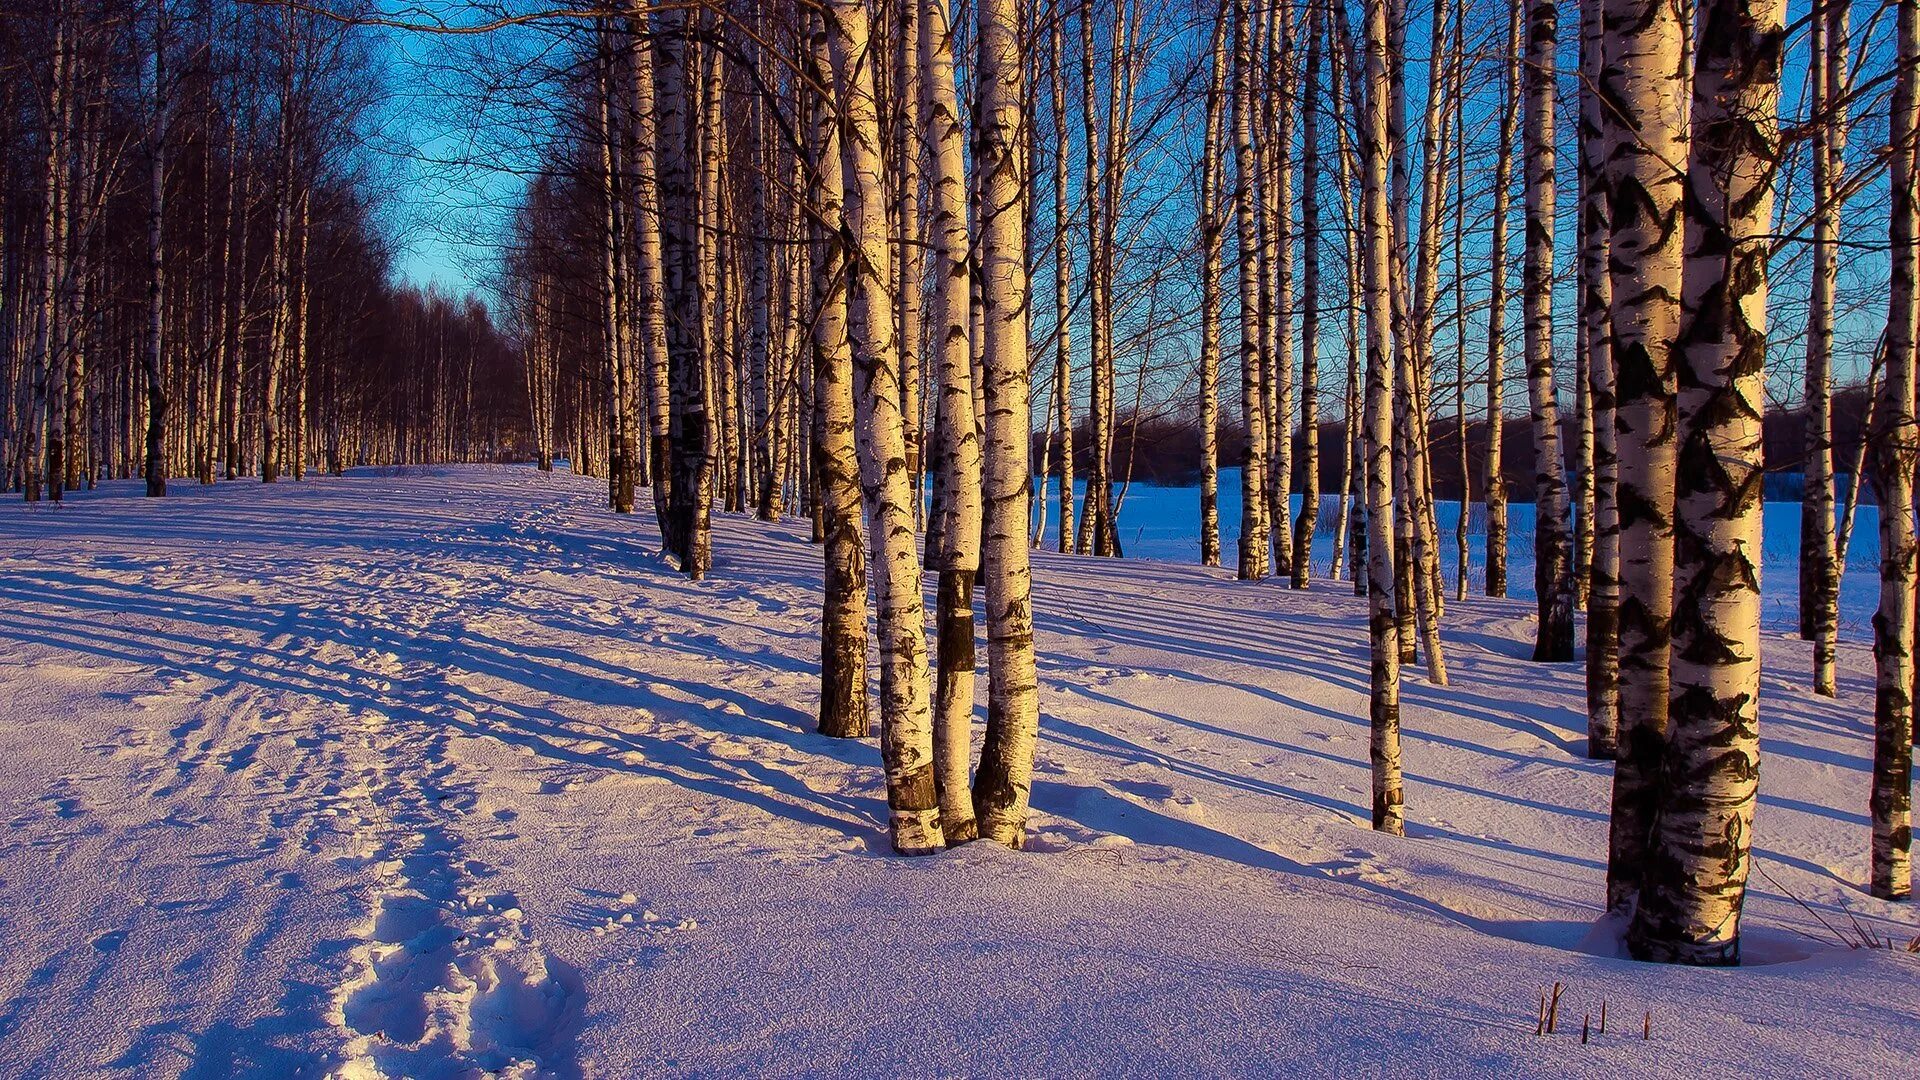 Березовая роща Тула. Зимний лес. Пейзаж зимнего леса. Зимой в лесу. Красивая природа февраль